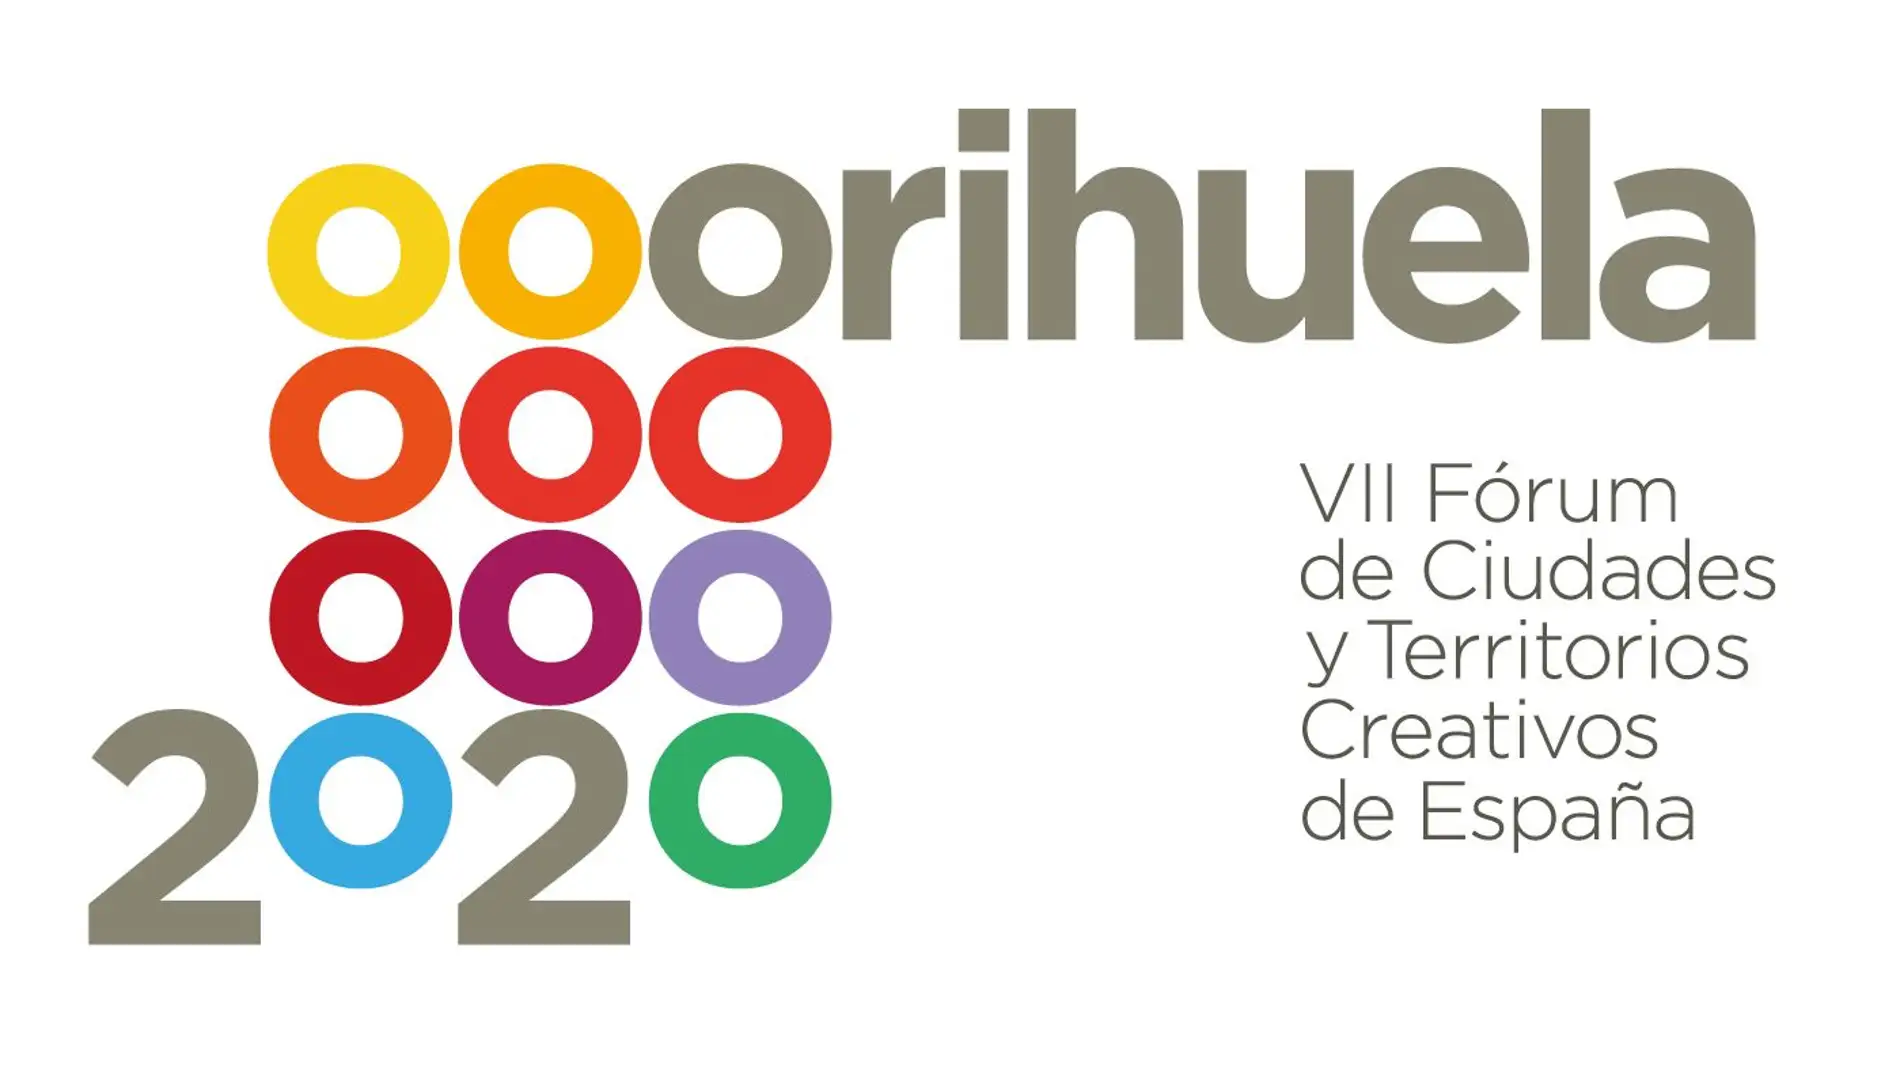 Hasta 22 ciudades y territorios de España se acercarán esta semana al forum Orihuela 2020 